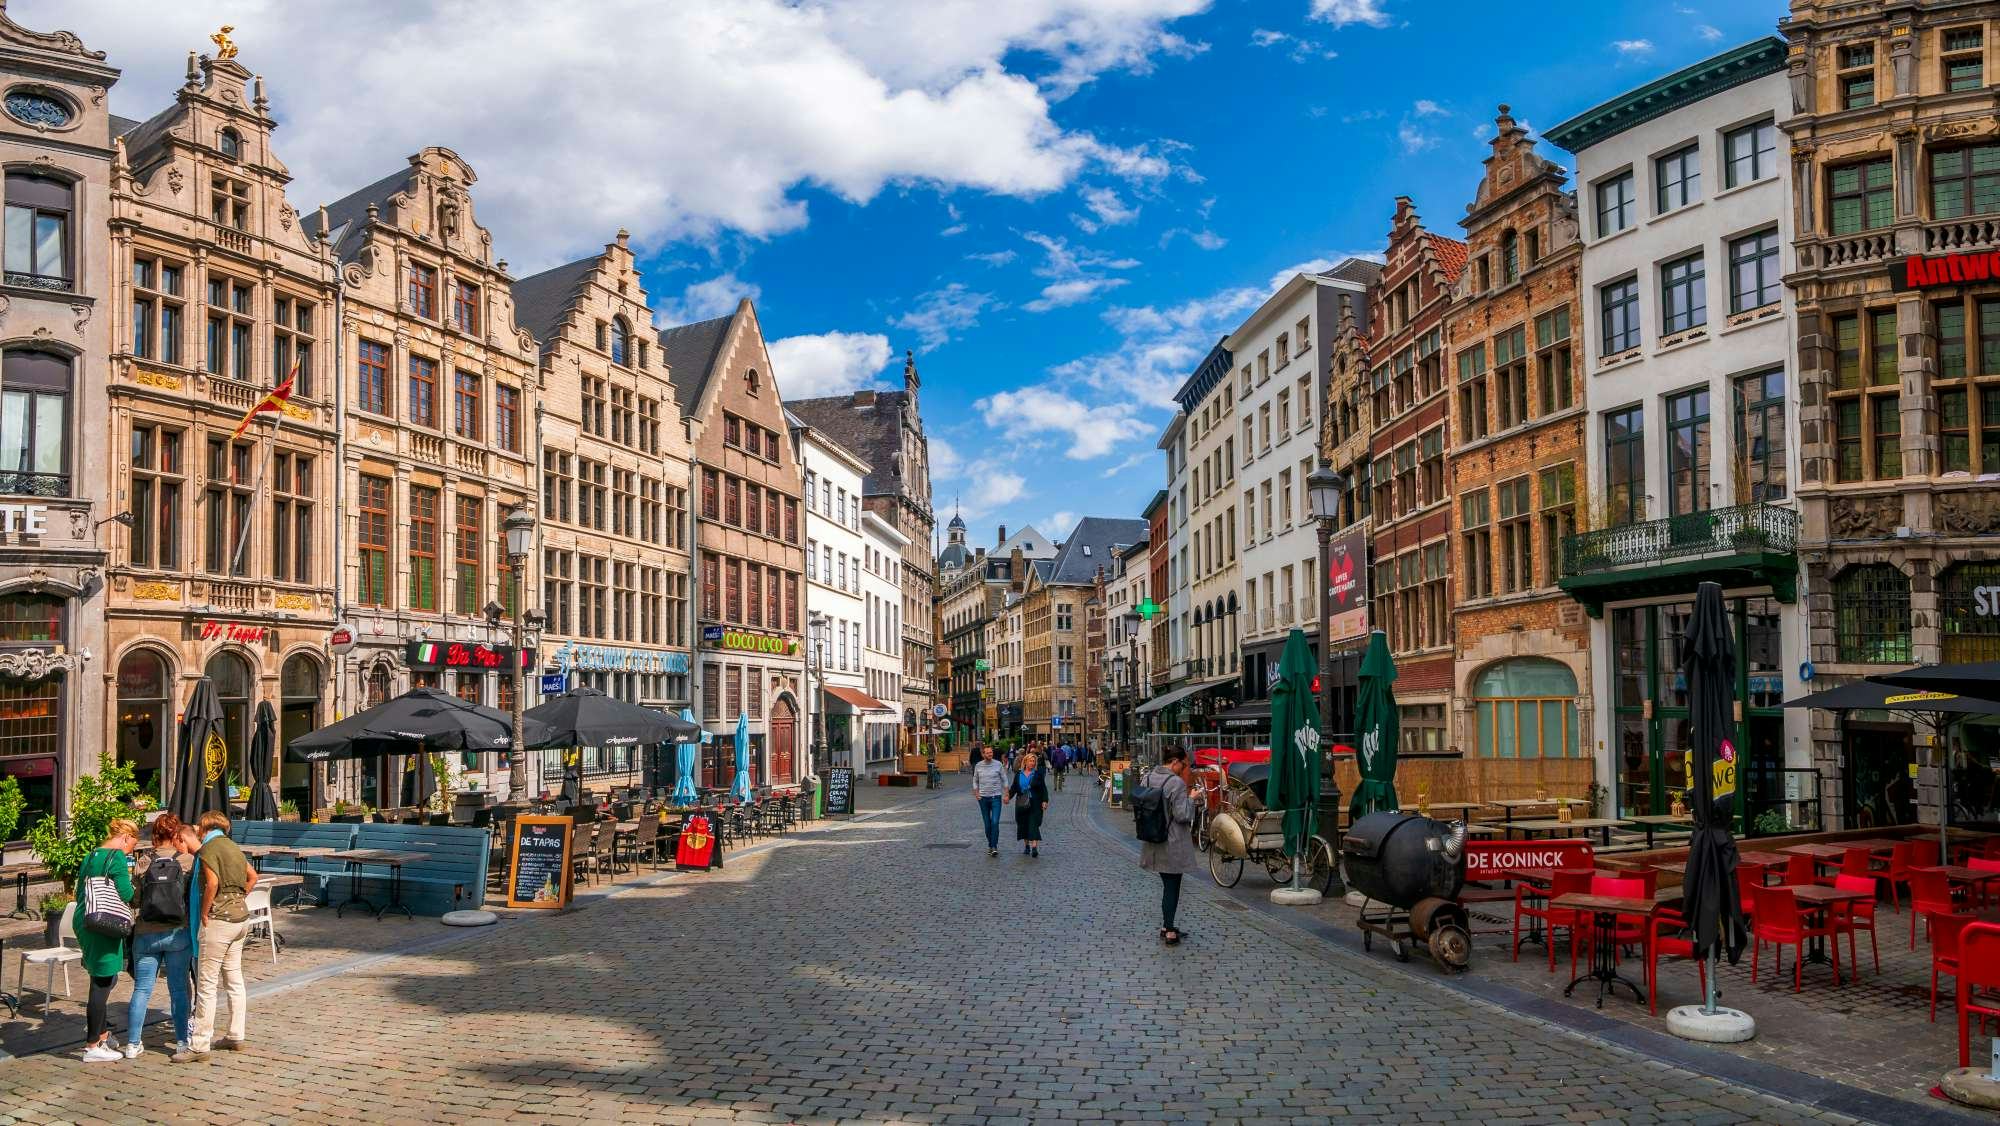 Antwerpen verdient fors aan Nederlanders: 'Ons café draait 300 procent meer'